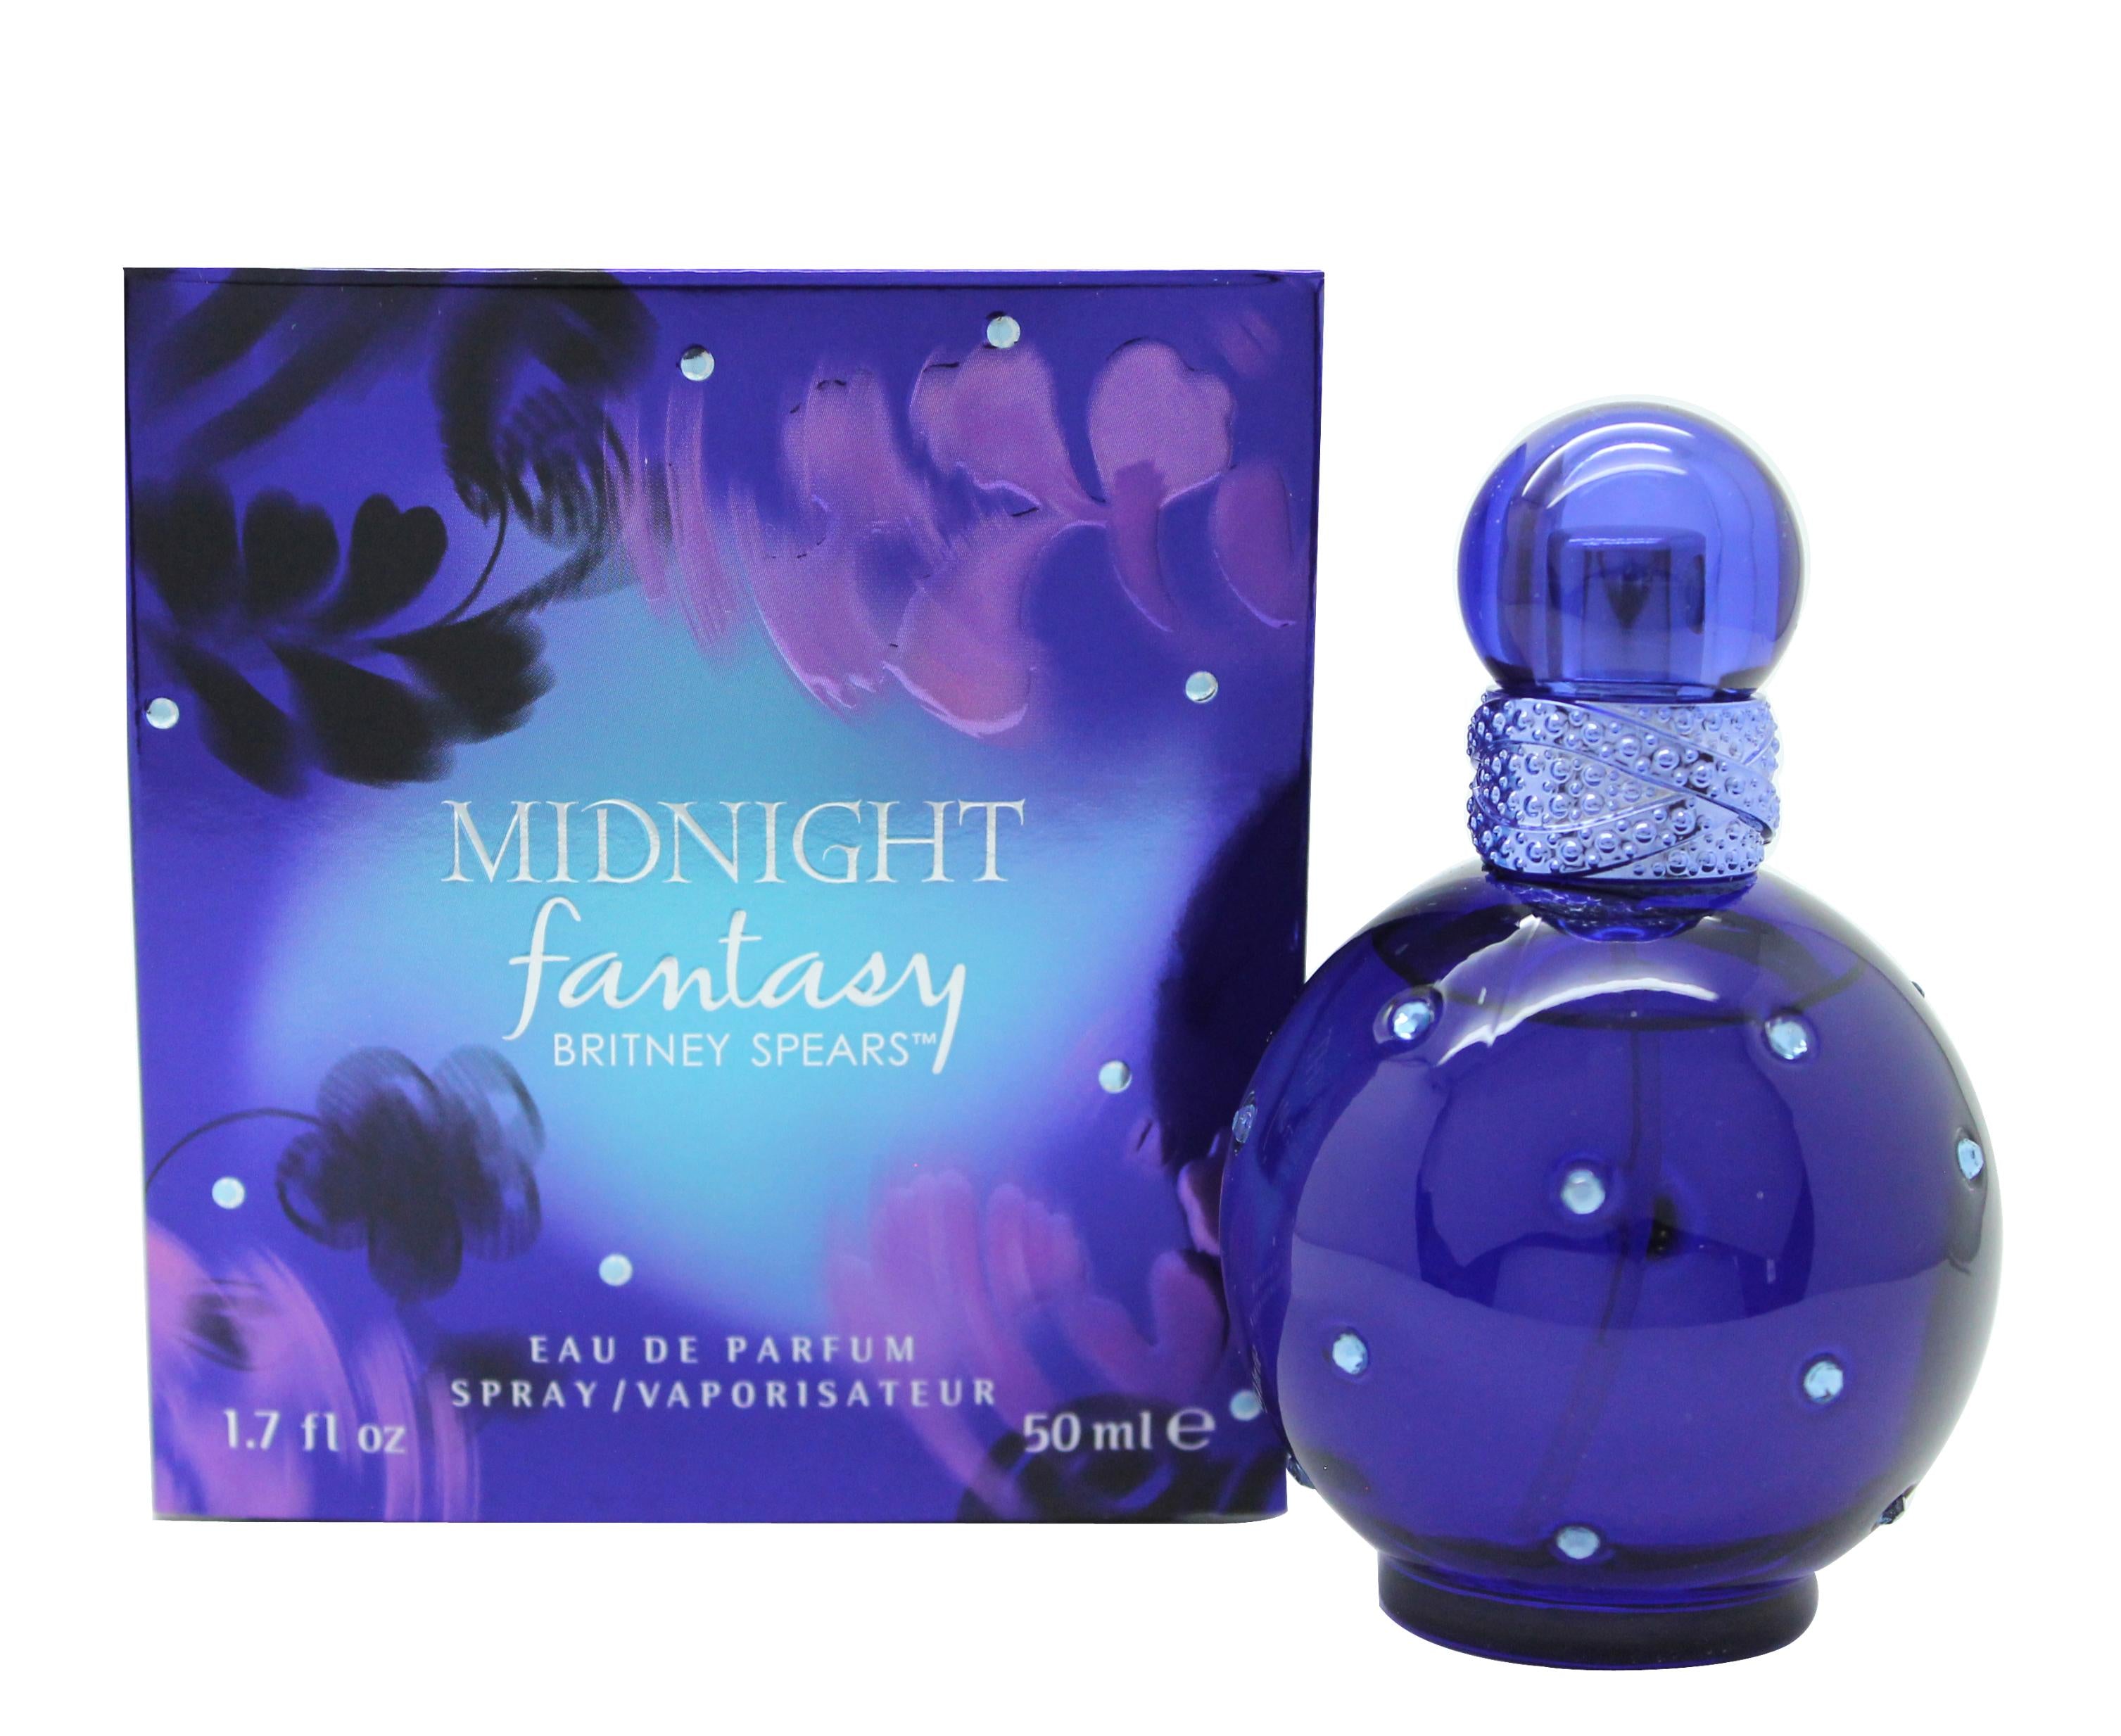 View Britney Spears Midnight Fantasy Eau de Parfum 50ml Spray information